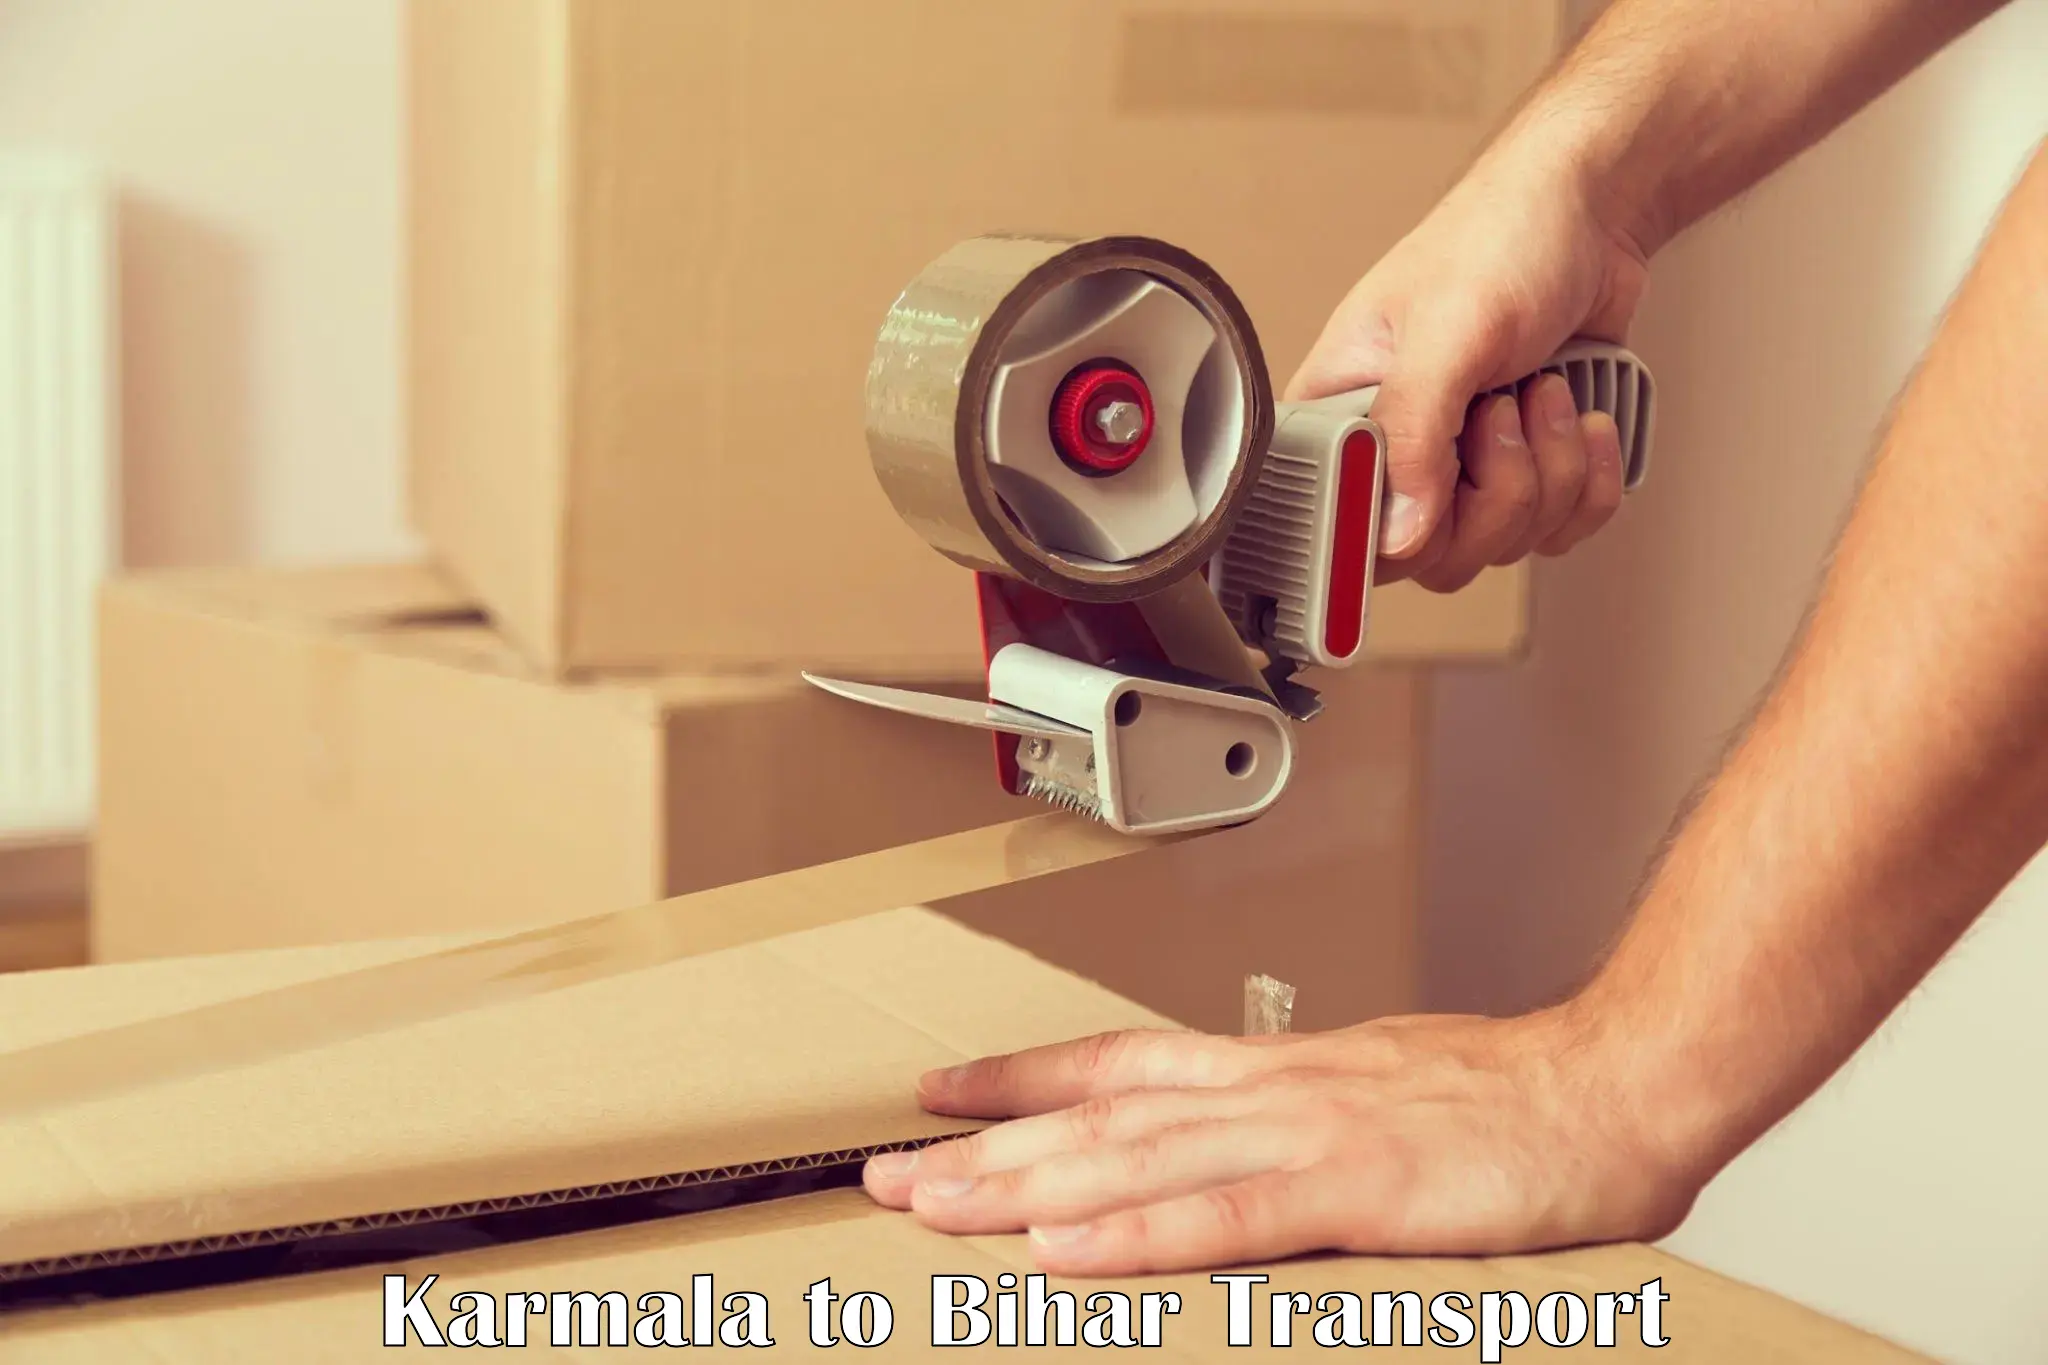 Shipping services Karmala to Barhiya